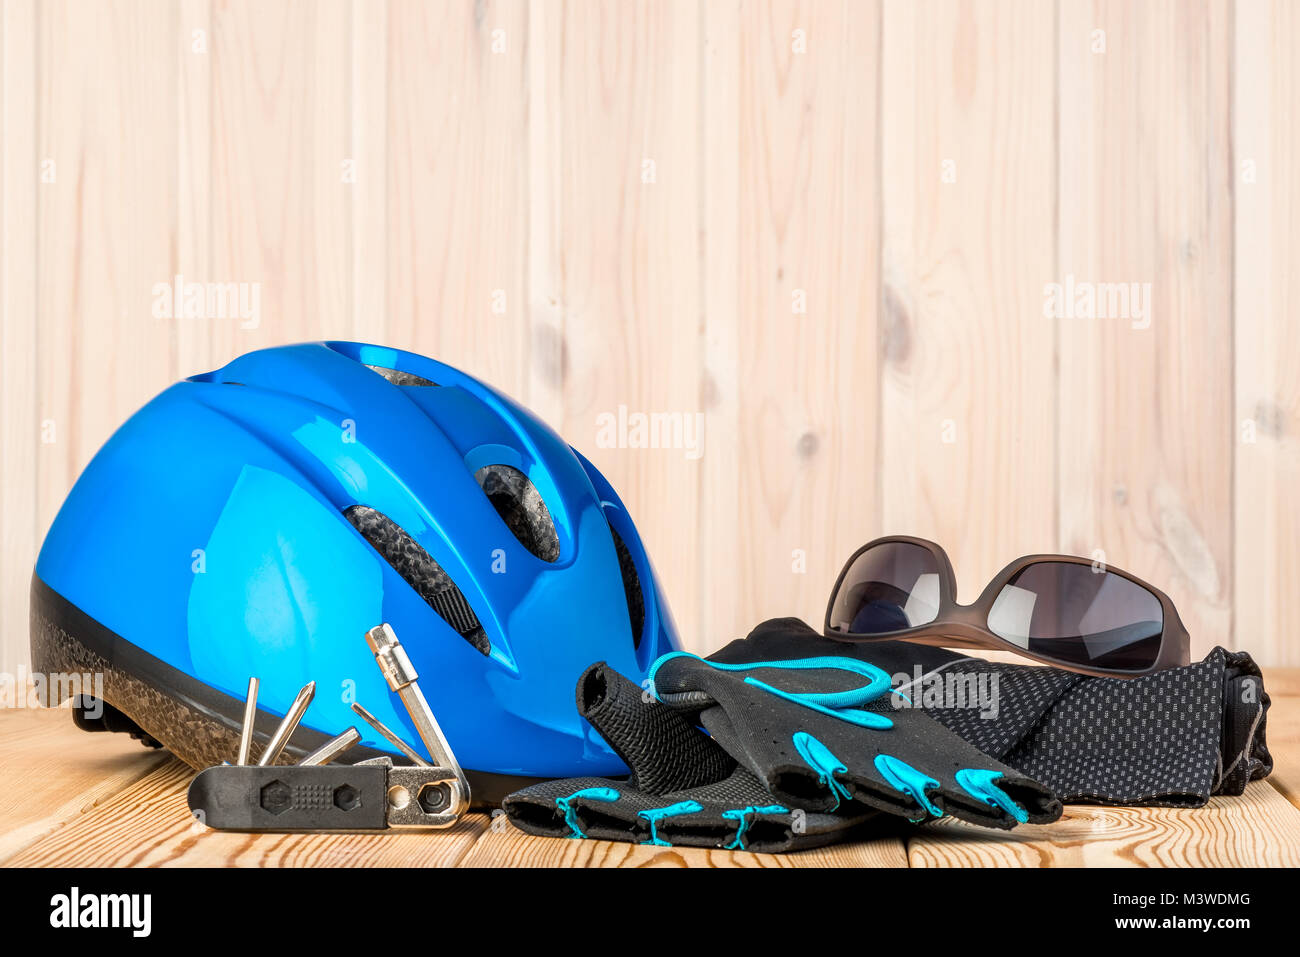 Helm, Handschuhe und Radfahren Zubehör auf einem hölzernen Hintergrund Stockfoto